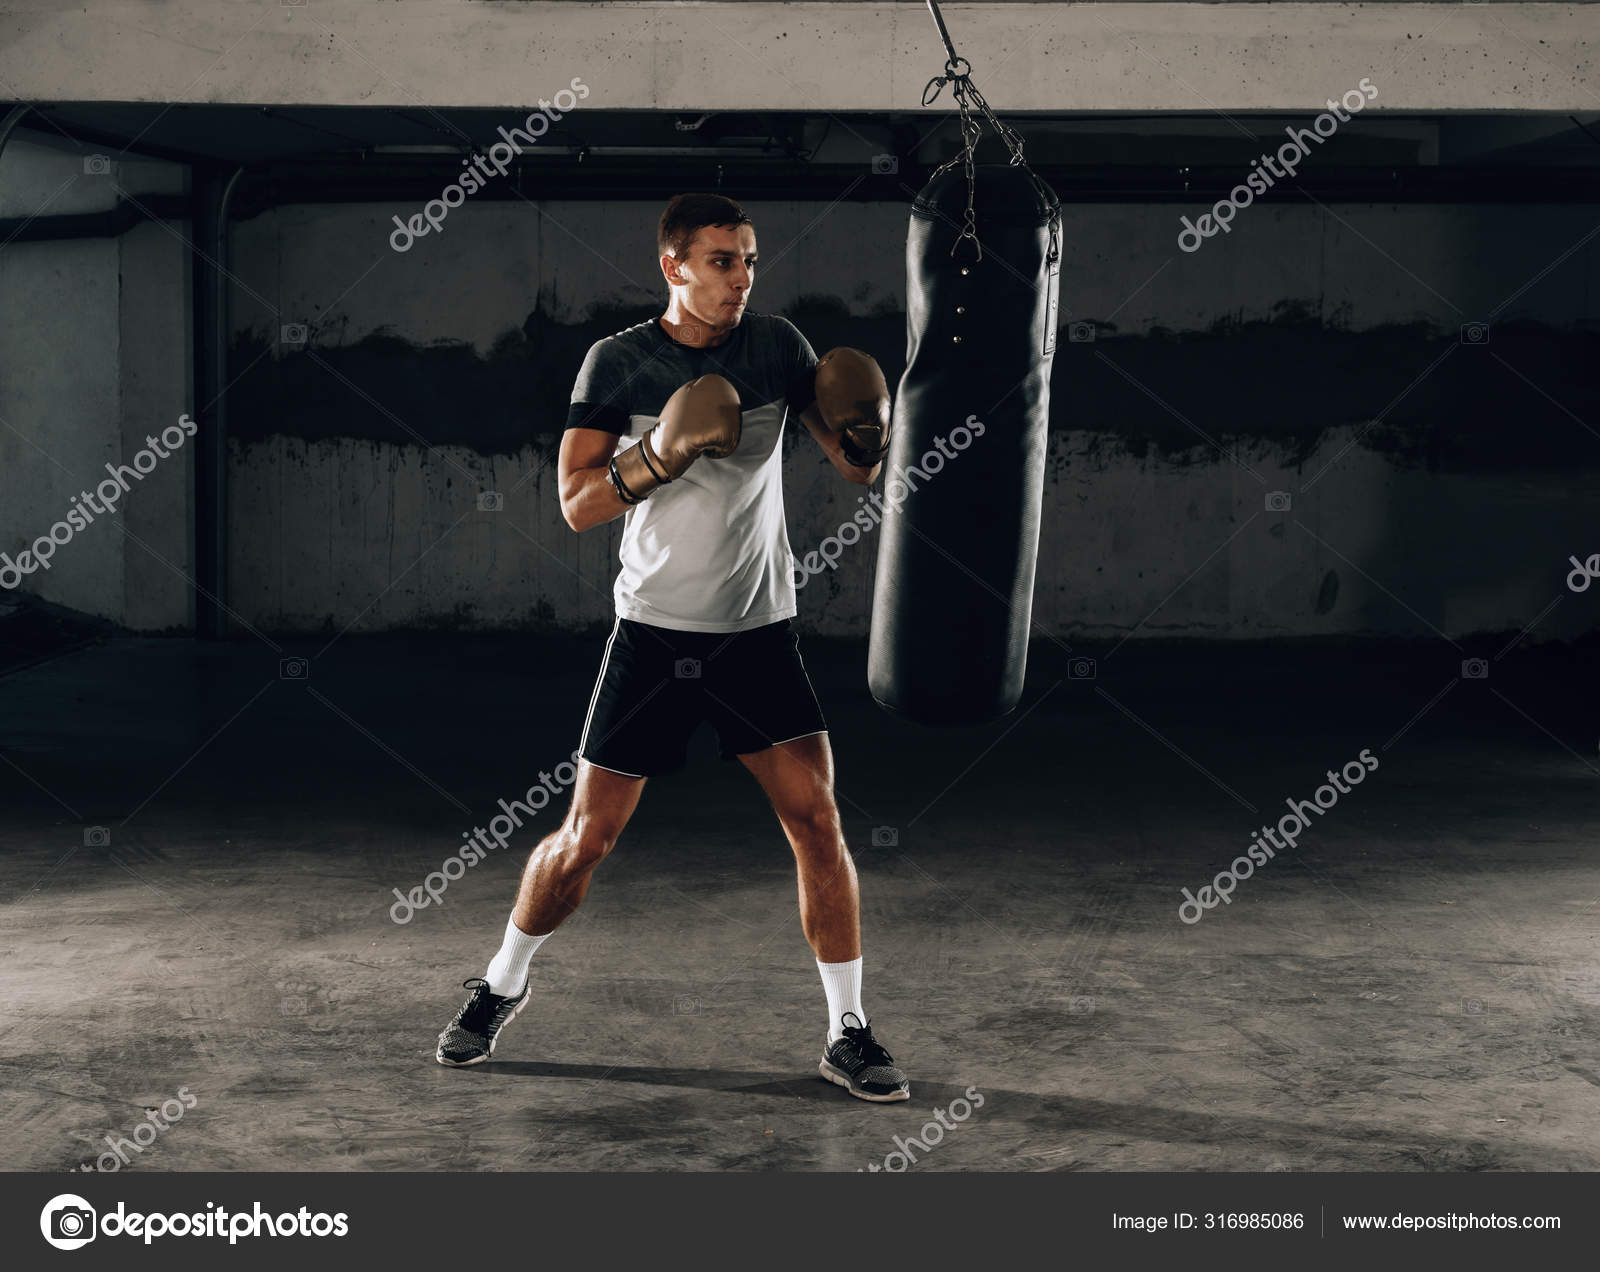 Exercícios para treinar boxe sem saco de areia